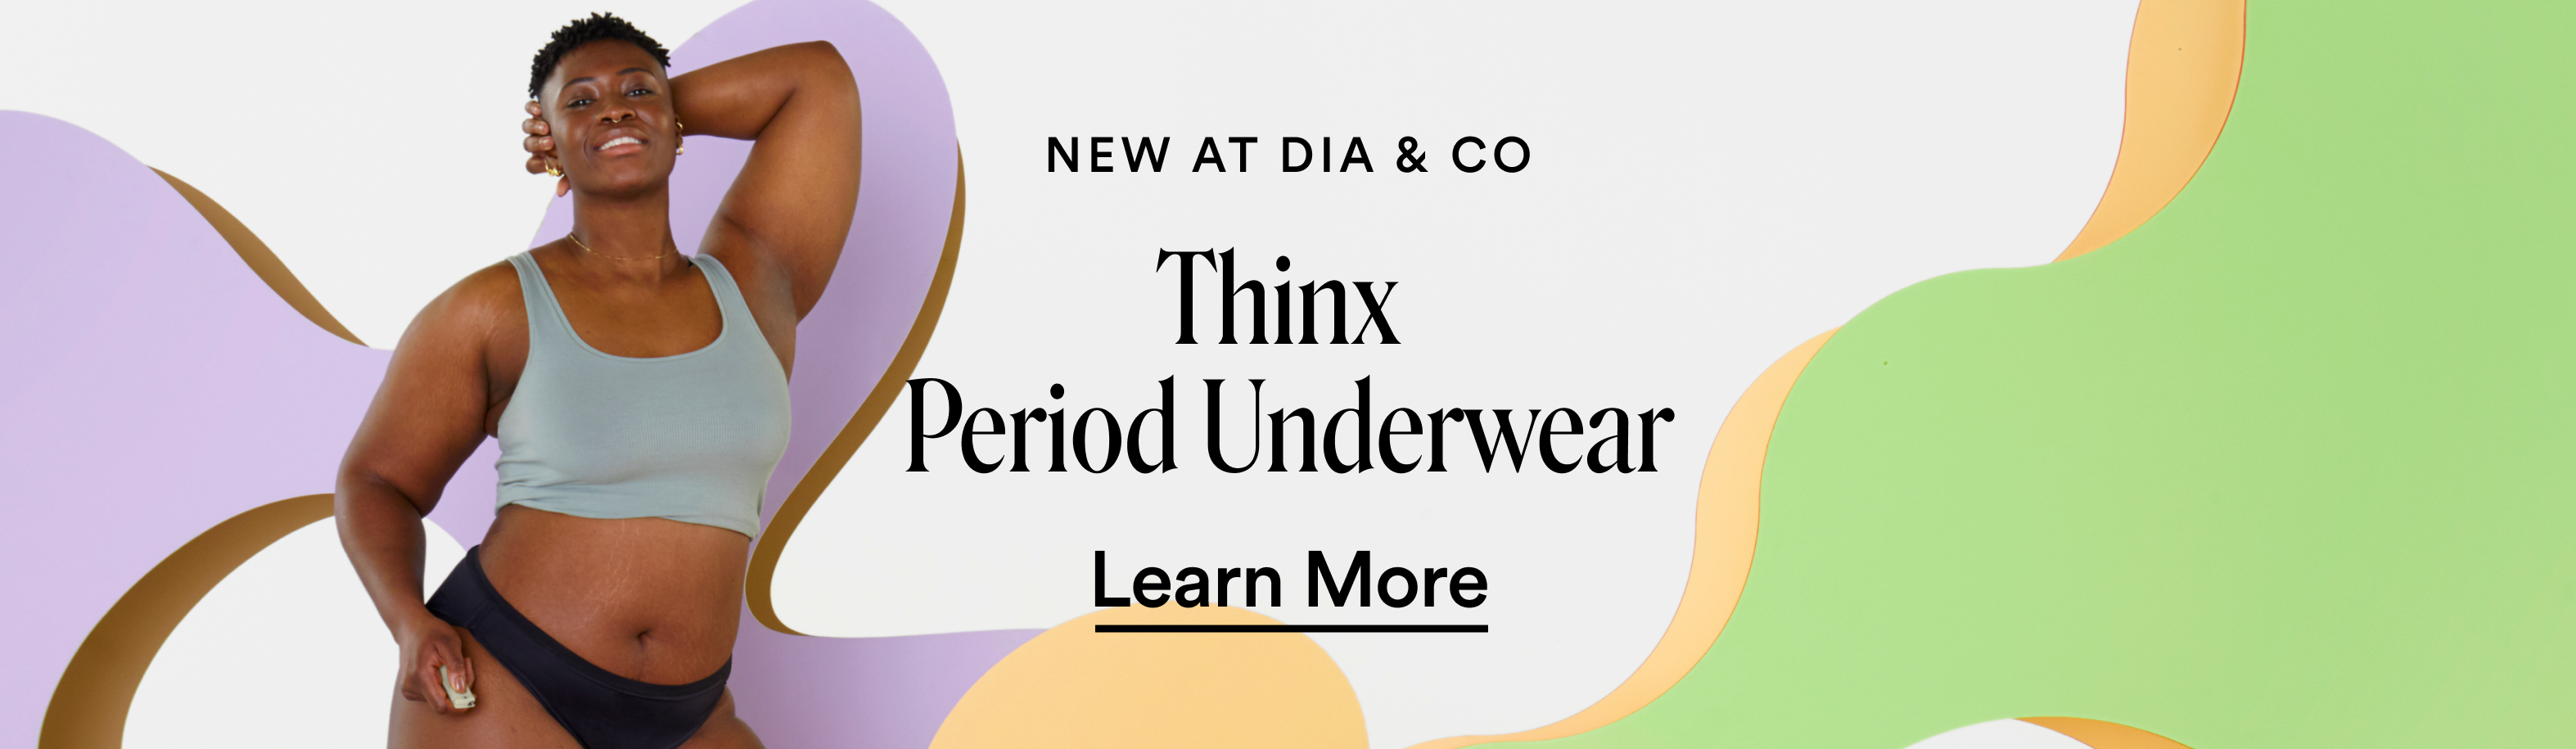 Thinx Period Underwear